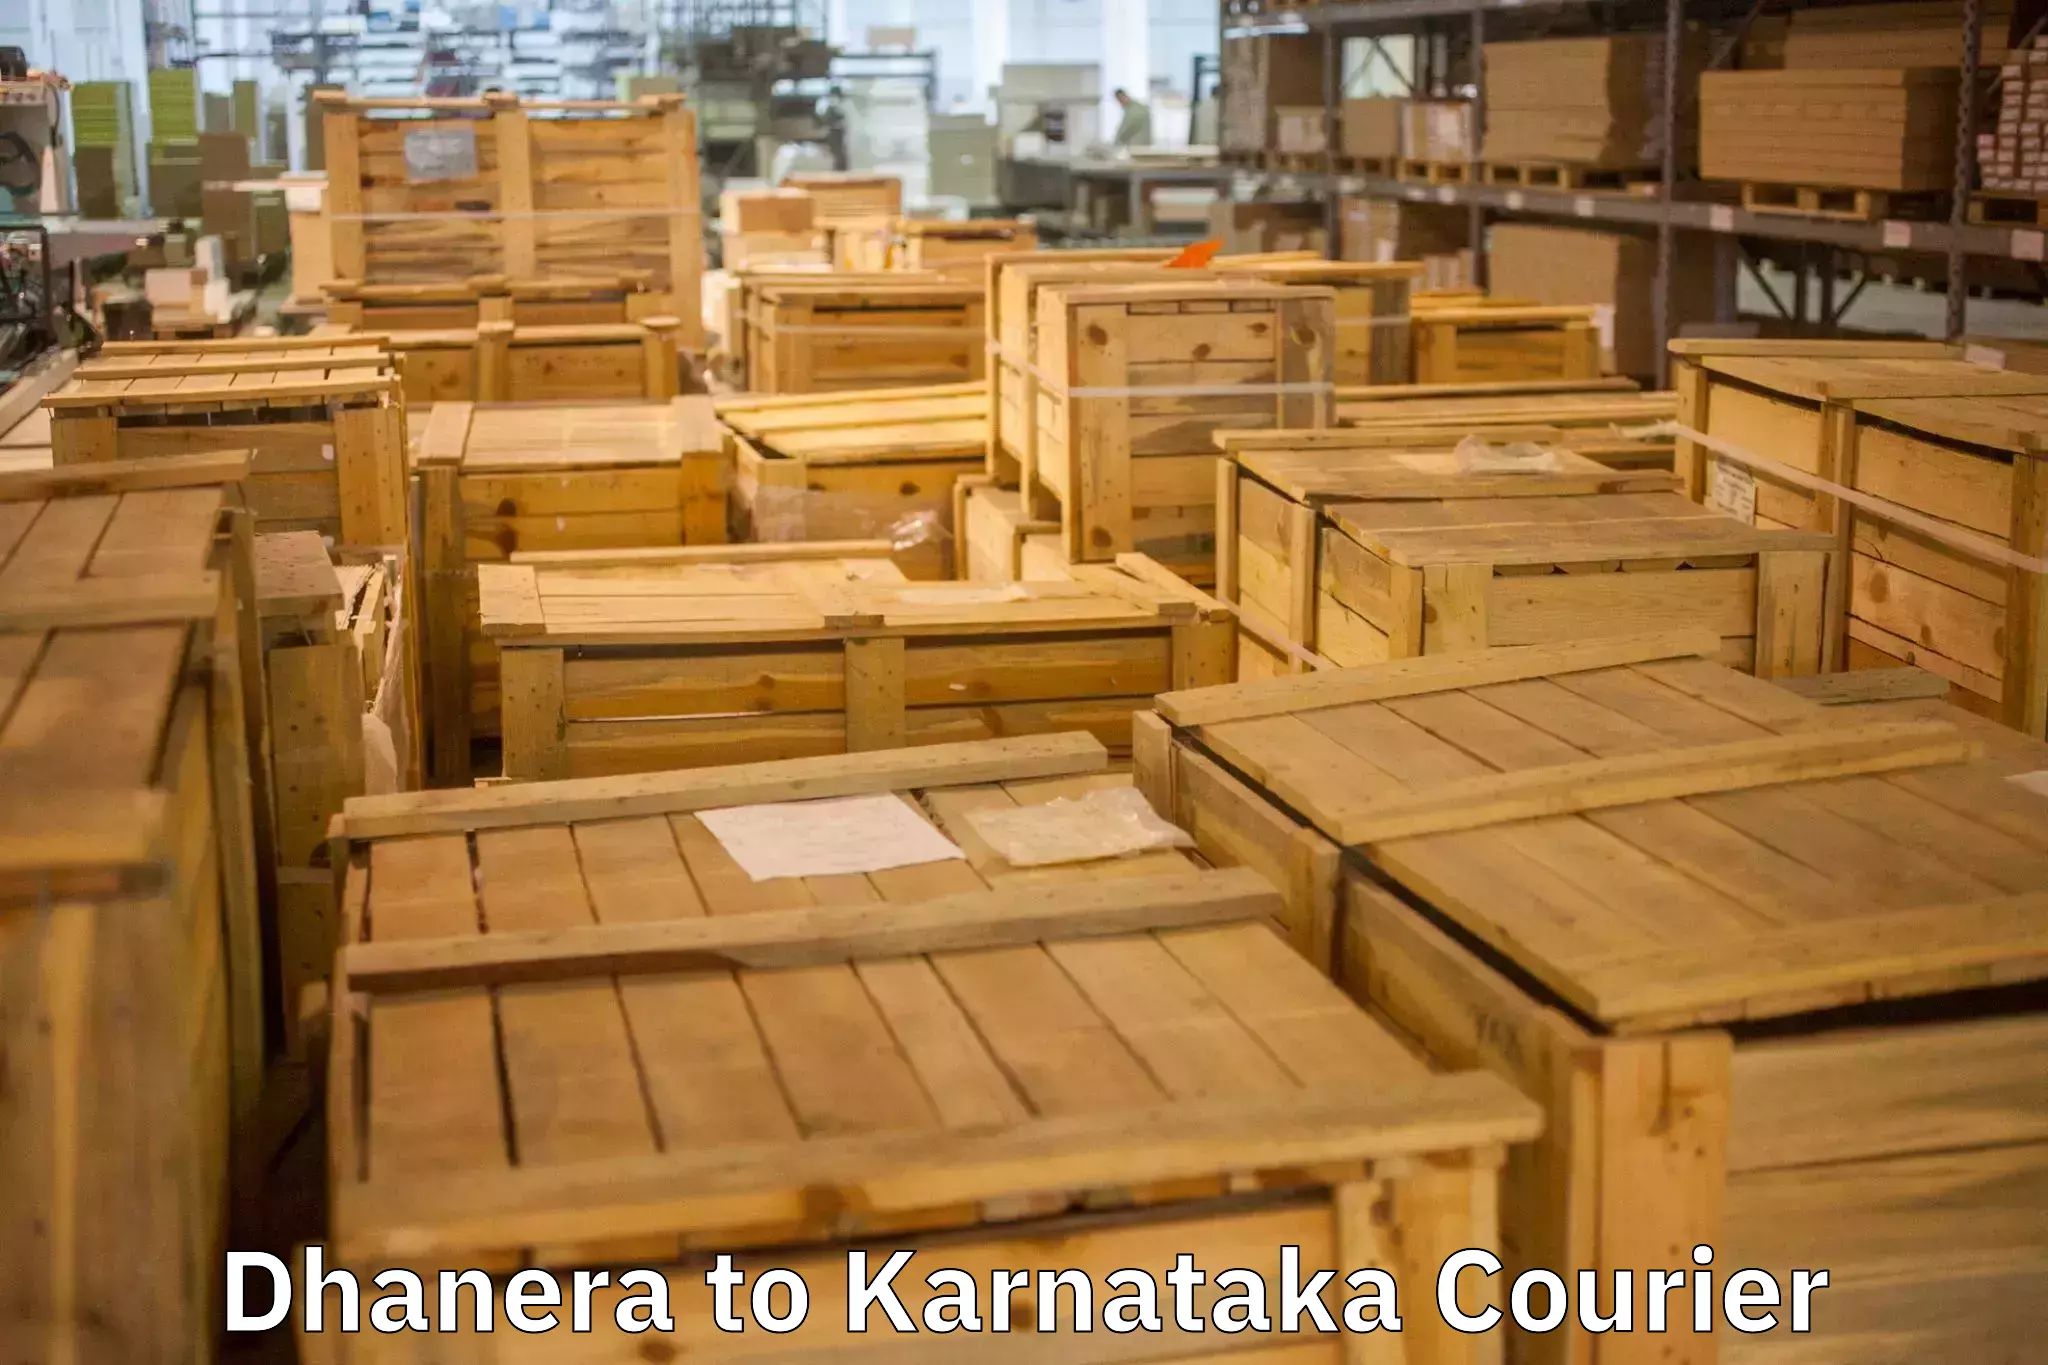 Moving and packing experts Dhanera to Chikkanayakanahalli